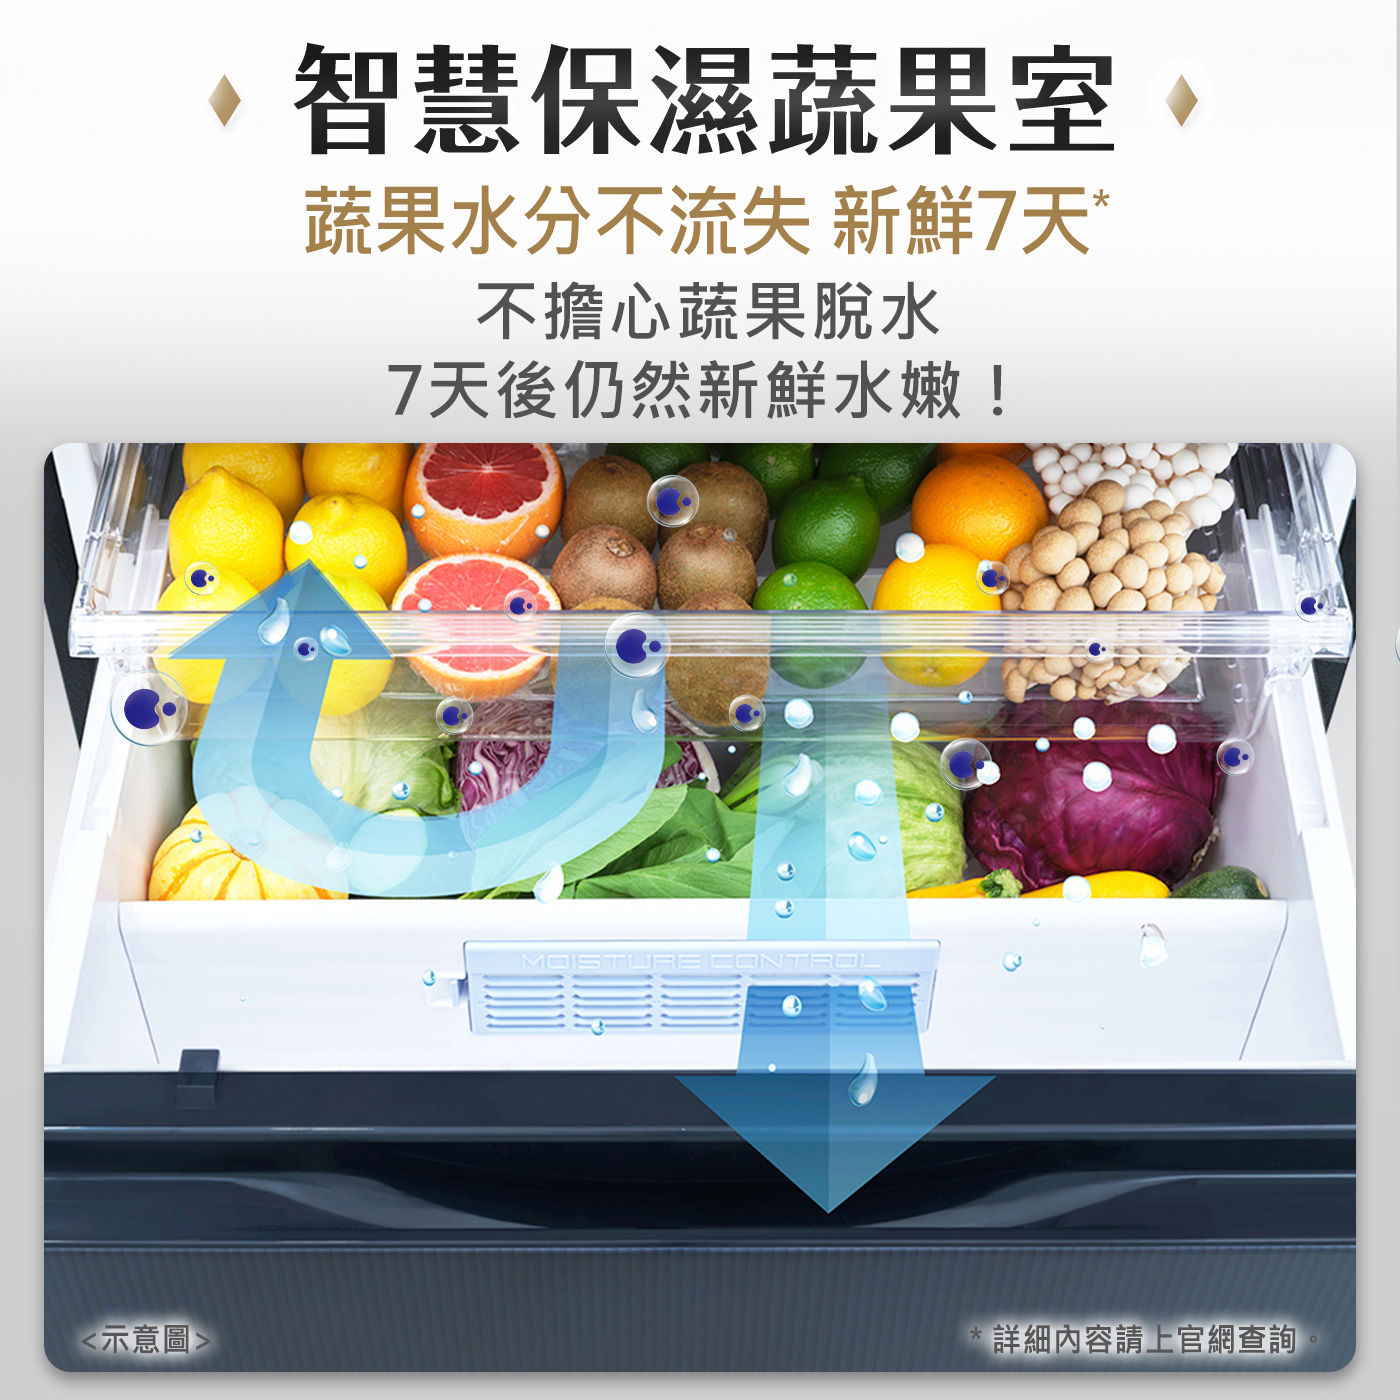 國際牌 610公升 四門冰箱 NR-D61CGS-N智慧保濕蔬果室，蔬果水份不流失新鮮7天